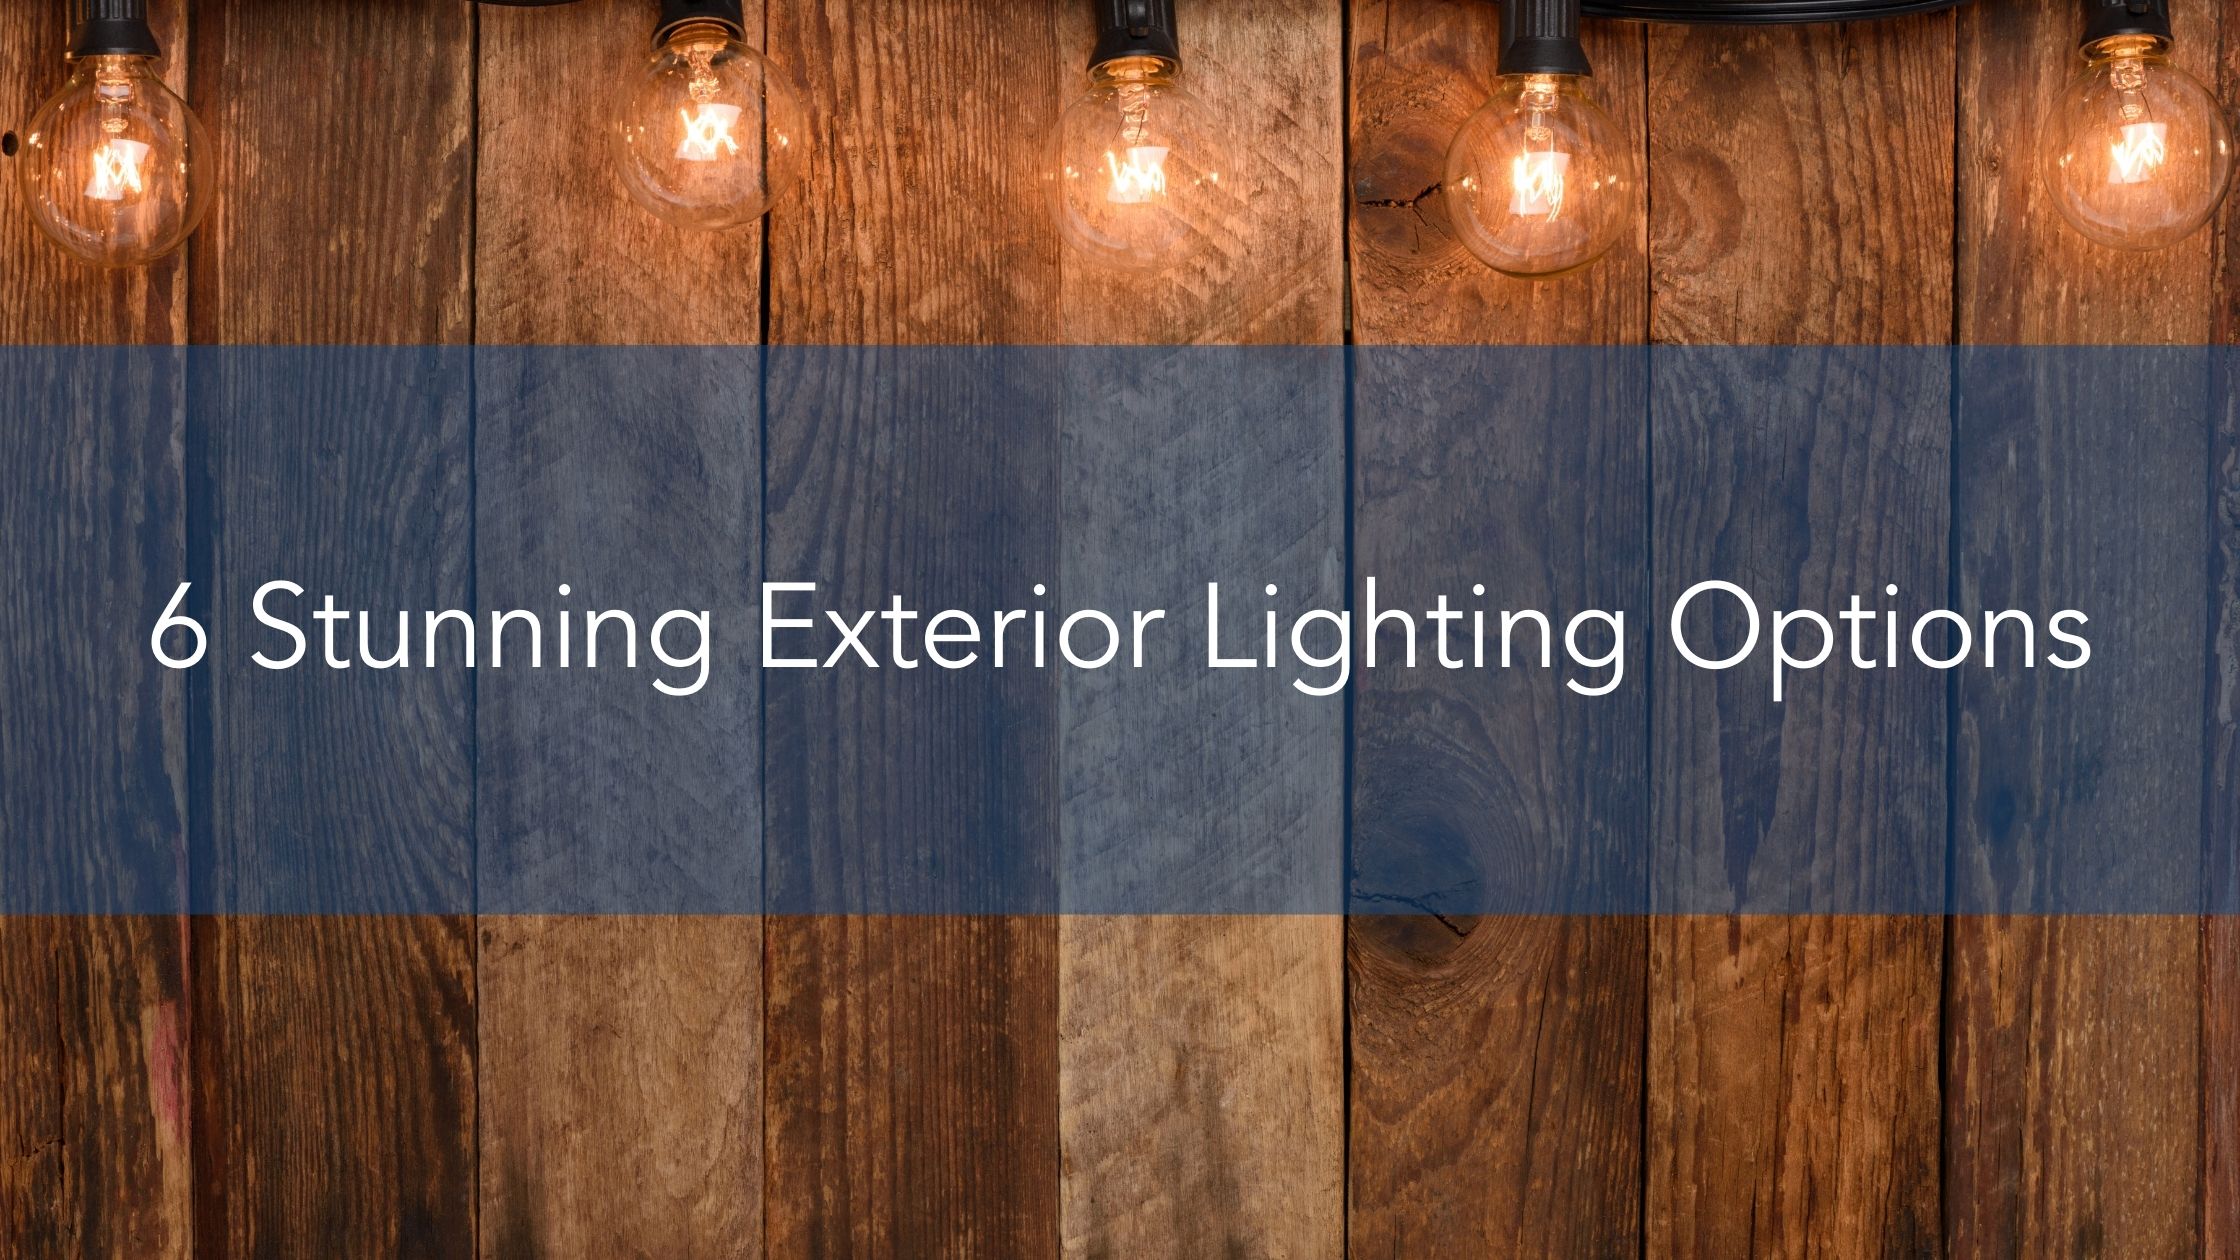 6 Stunning Exterior Lighting Options